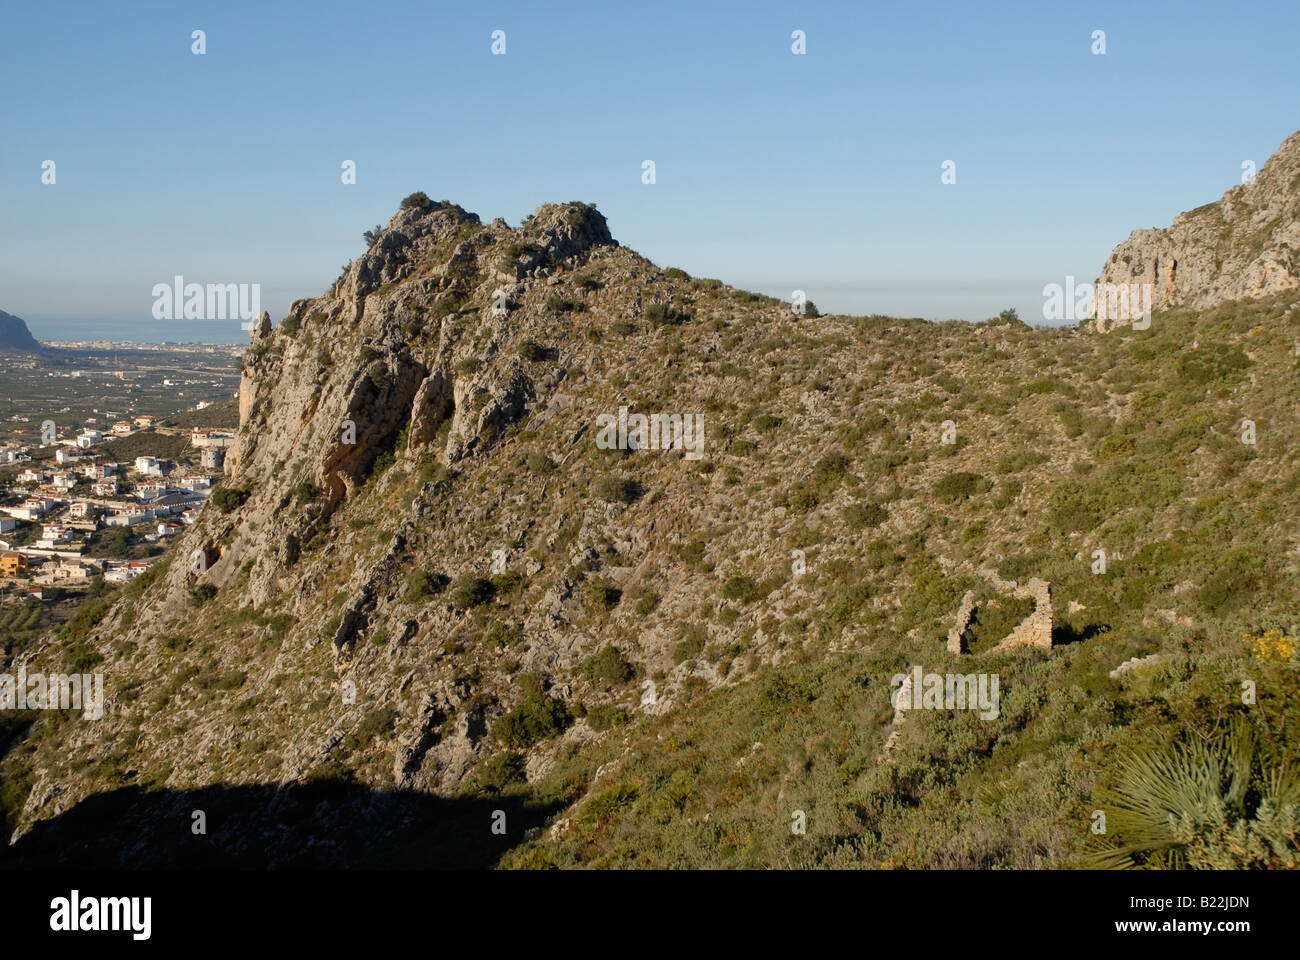 ruin on hillside & urban development, near Pedreguer, Marina Alta, Alicante Province, Comunidad Valenciana, Spain Stock Photo